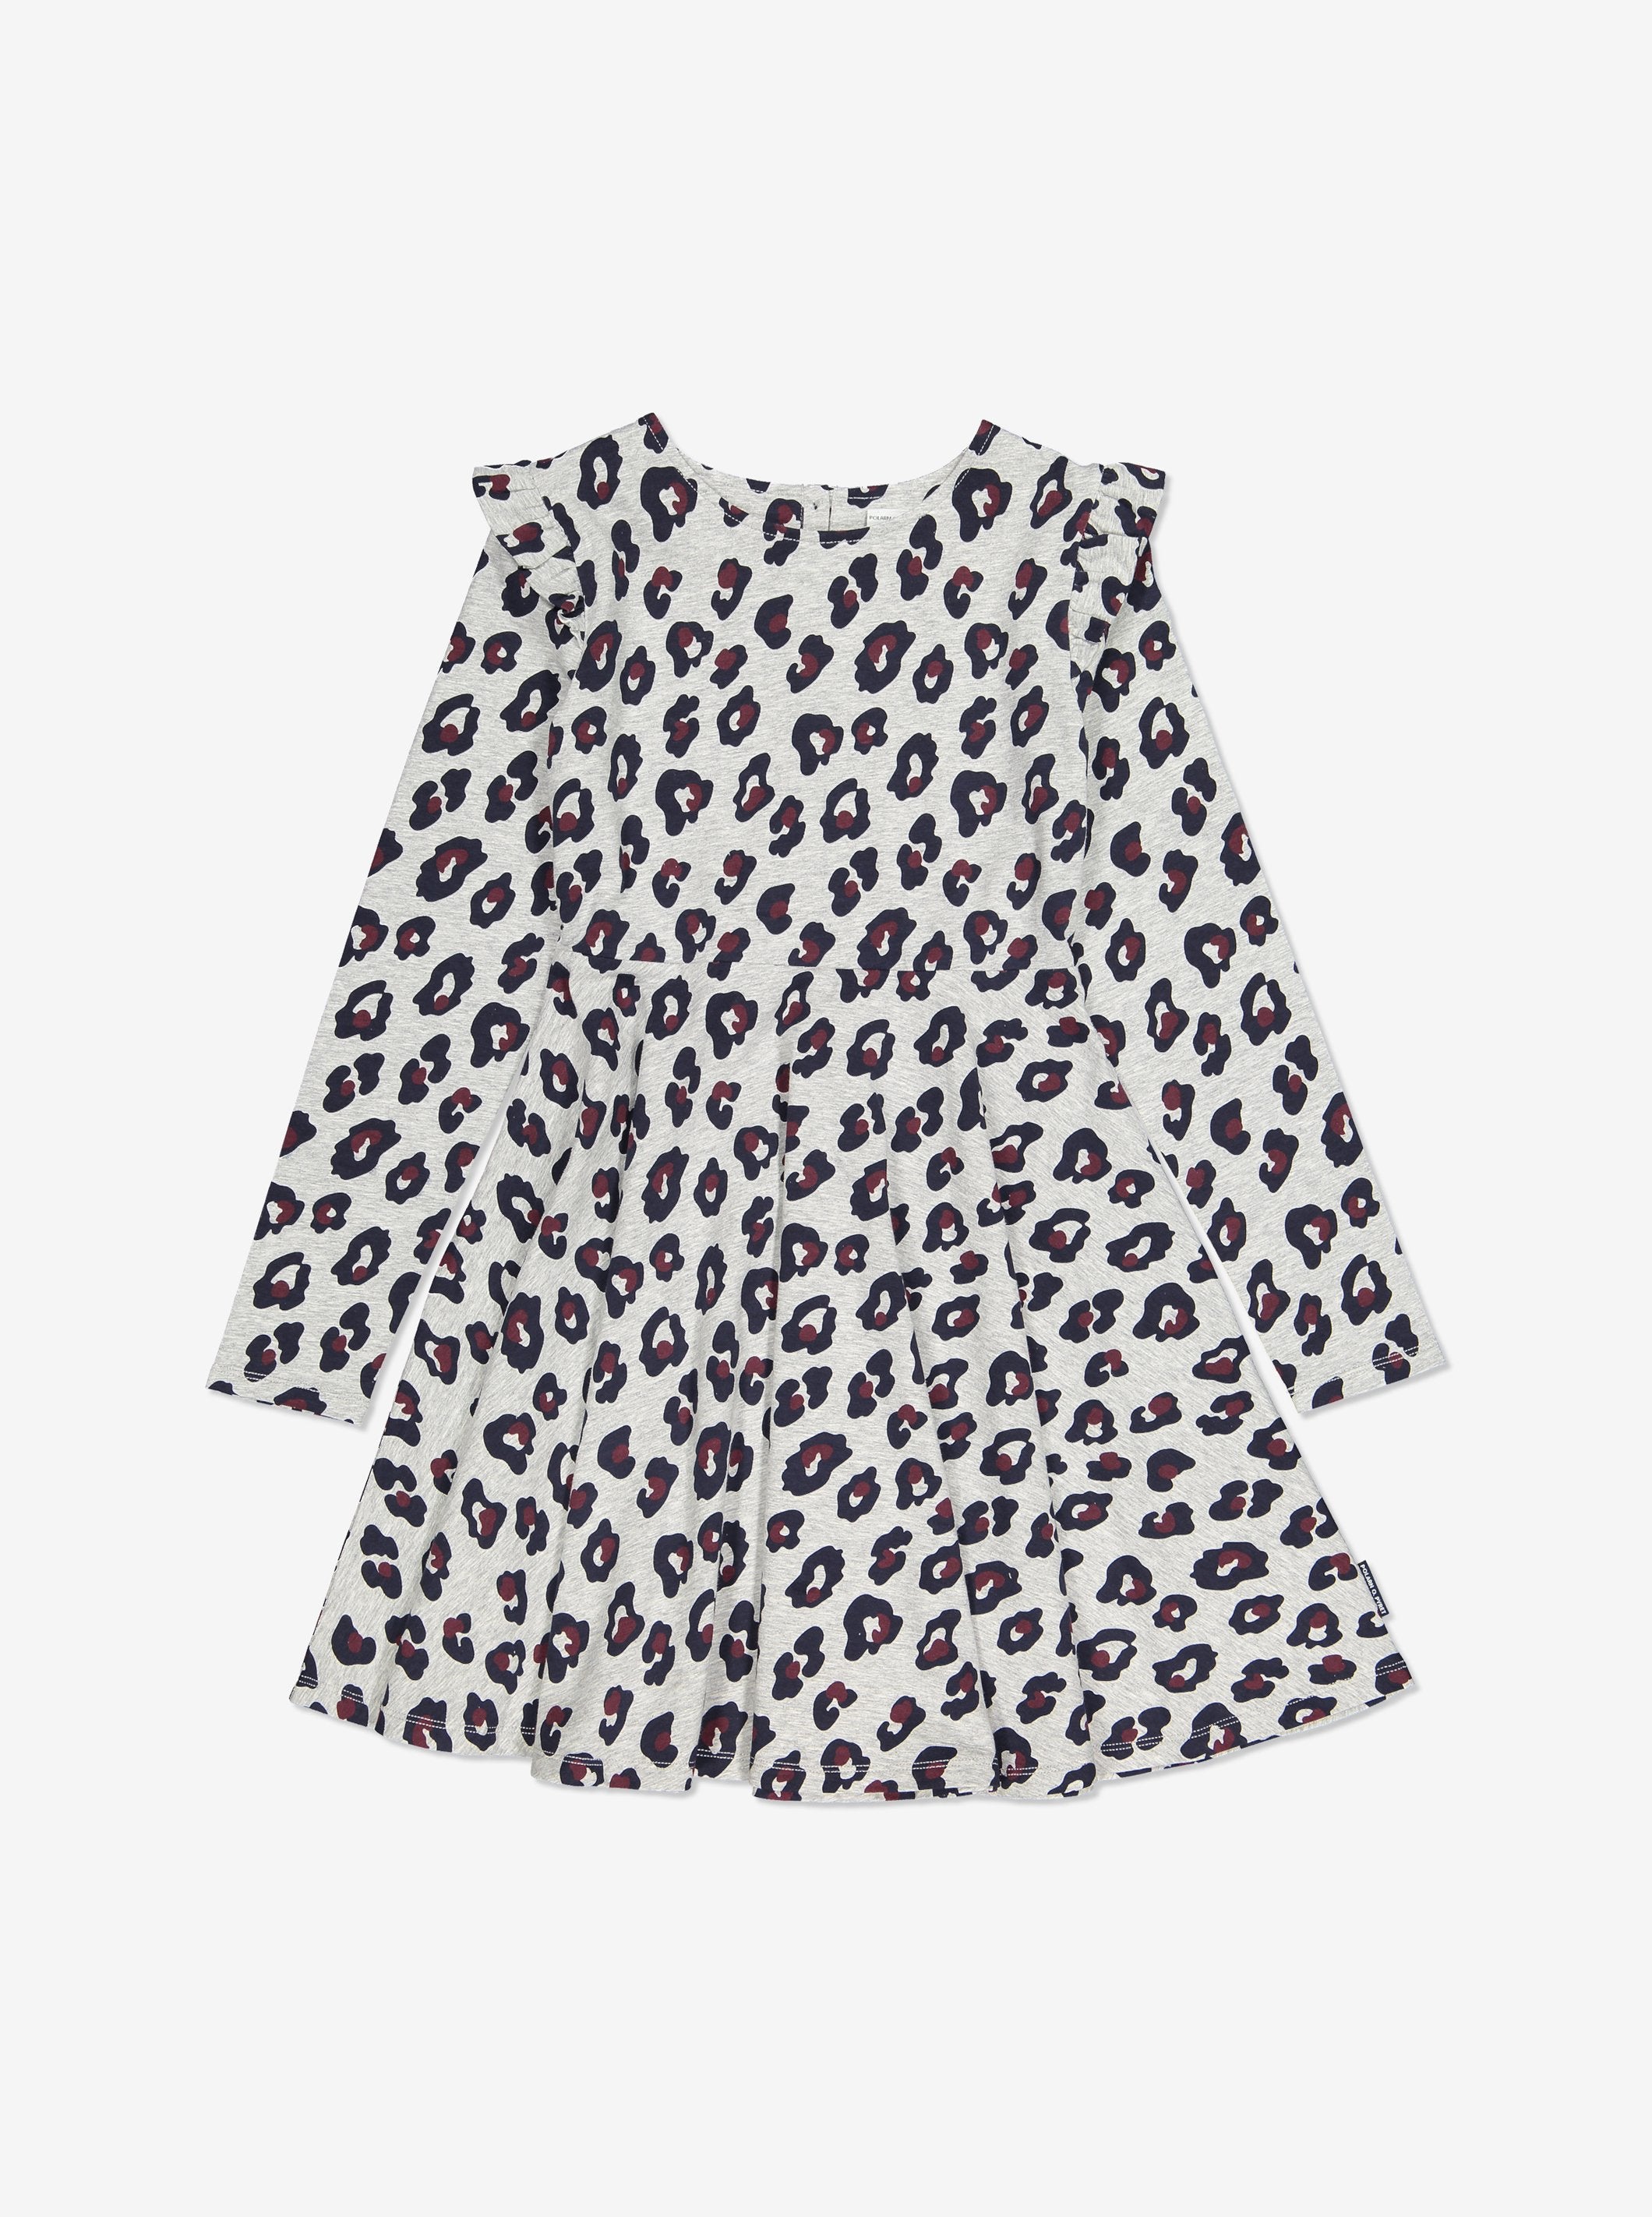 Leopard Print Kids Dress